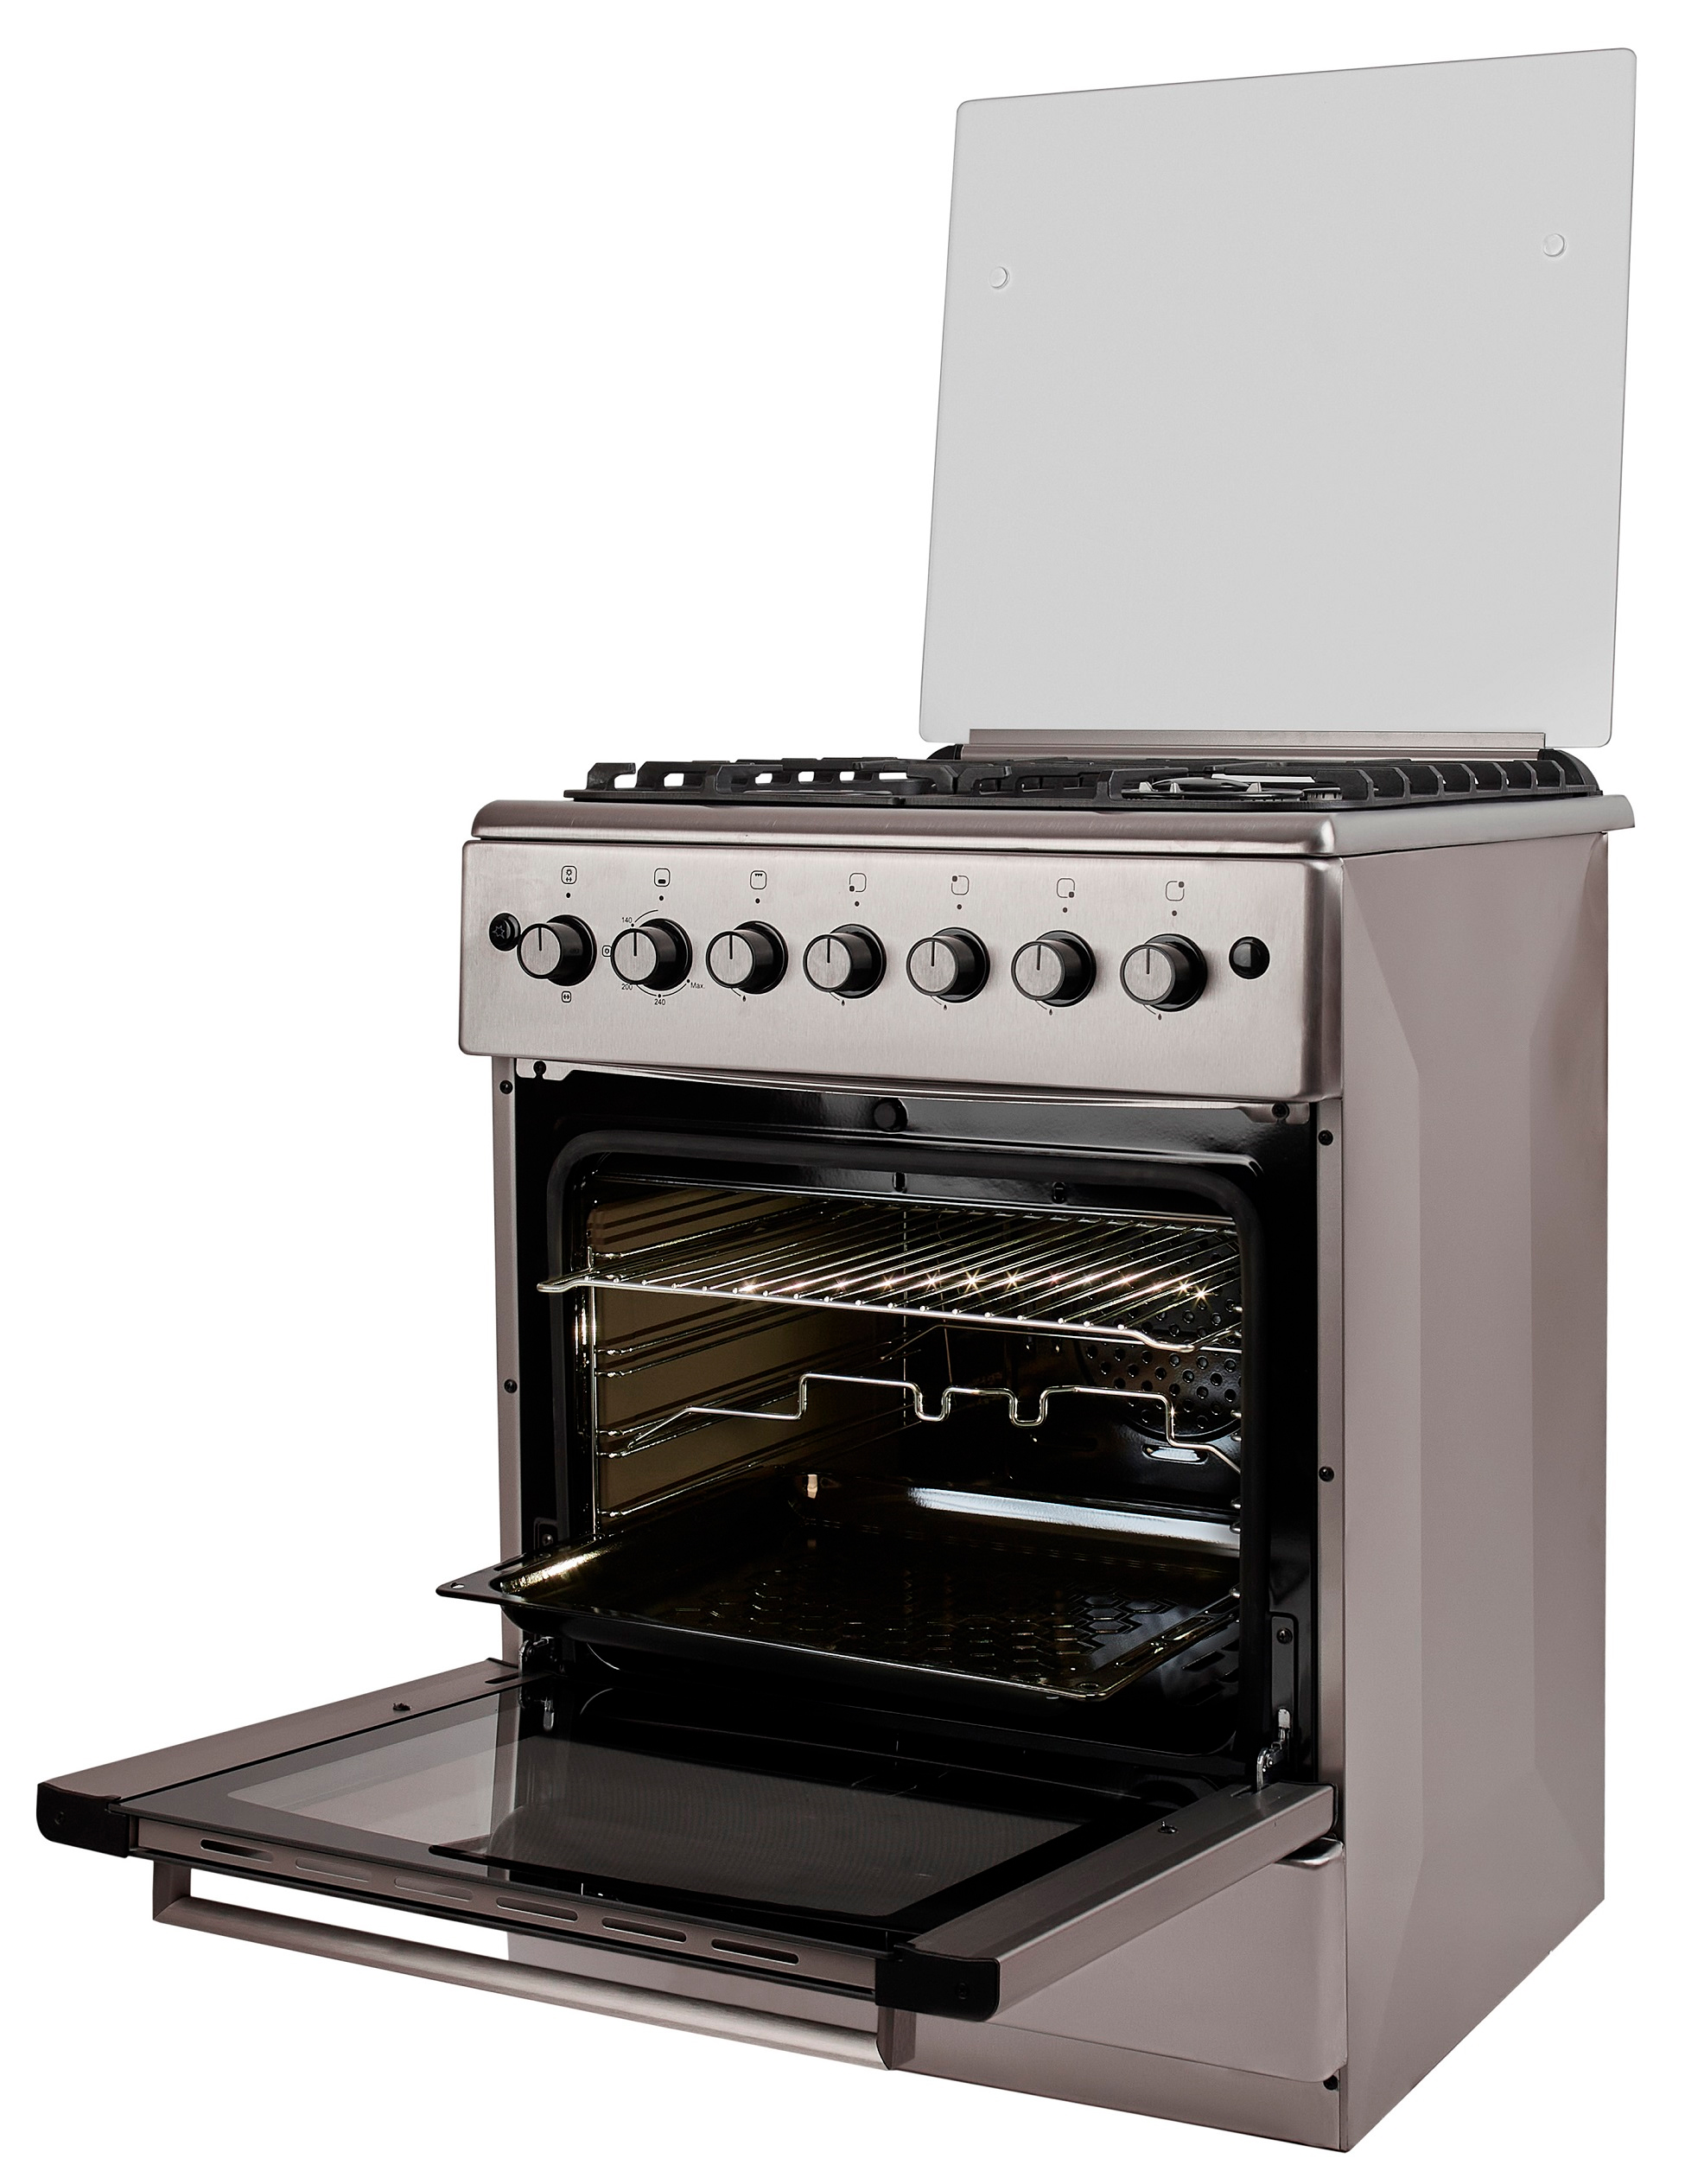 Кухонная плита Fiesta G 6403 SICLtw-SS отзывы - изображения 5